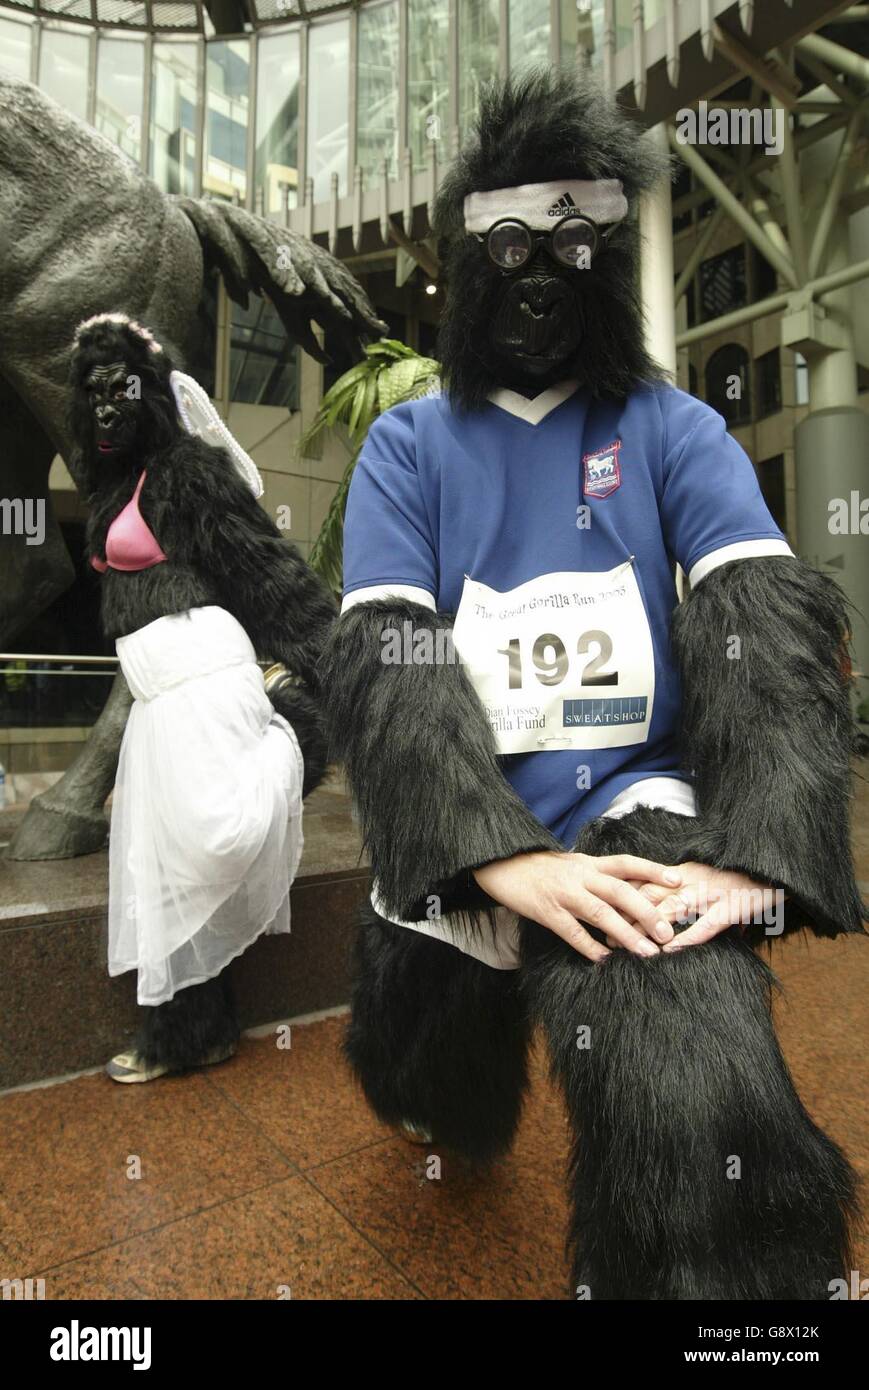 Läufer im Gorilla Kostüm strecken sich, bevor sie am Great Gorilla Run teilnehmen. Die Teilnehmer hatten 7km durch Zentral-London gelaufen, um Geld für den Dian Fossey Gorilla Fund zu sammeln. Stockfoto